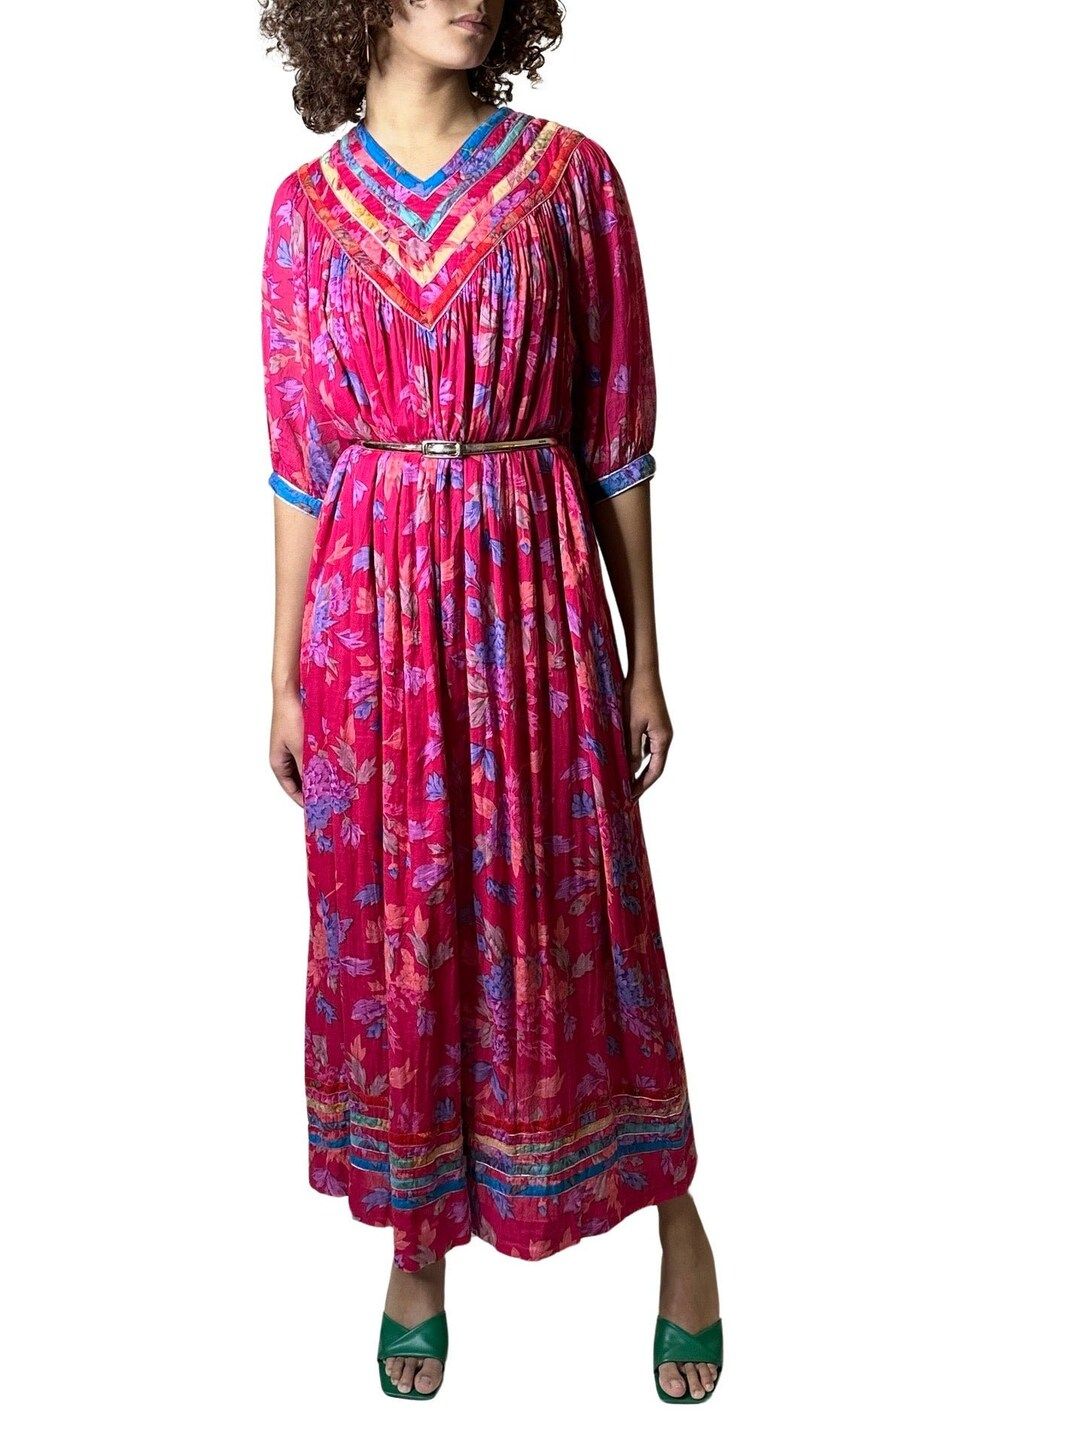 Original Vintage 1970's Pink Floral Print Dress by Phool - Etsy | Etsy (US)